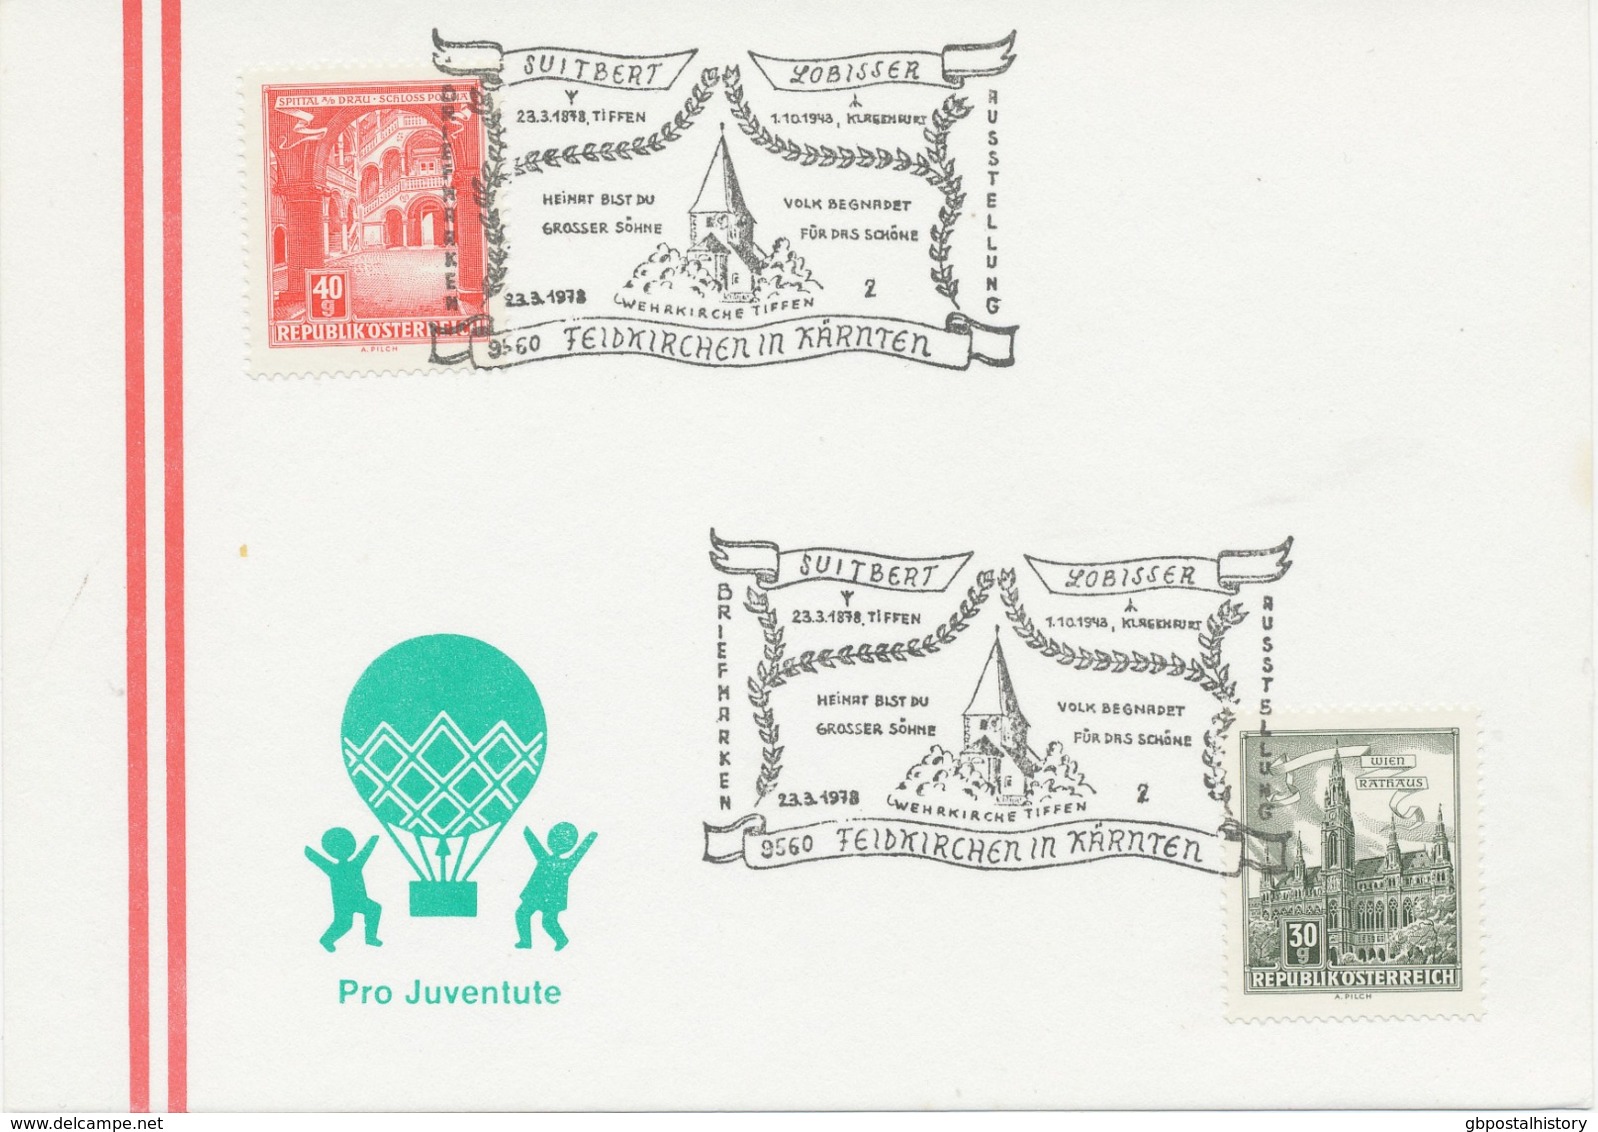 ÖSTERREICH 1978 9560 FELDKIRCHEN IN KÄRNTEN Briefmarkenausstellung - Maschinenstempel (EMA)